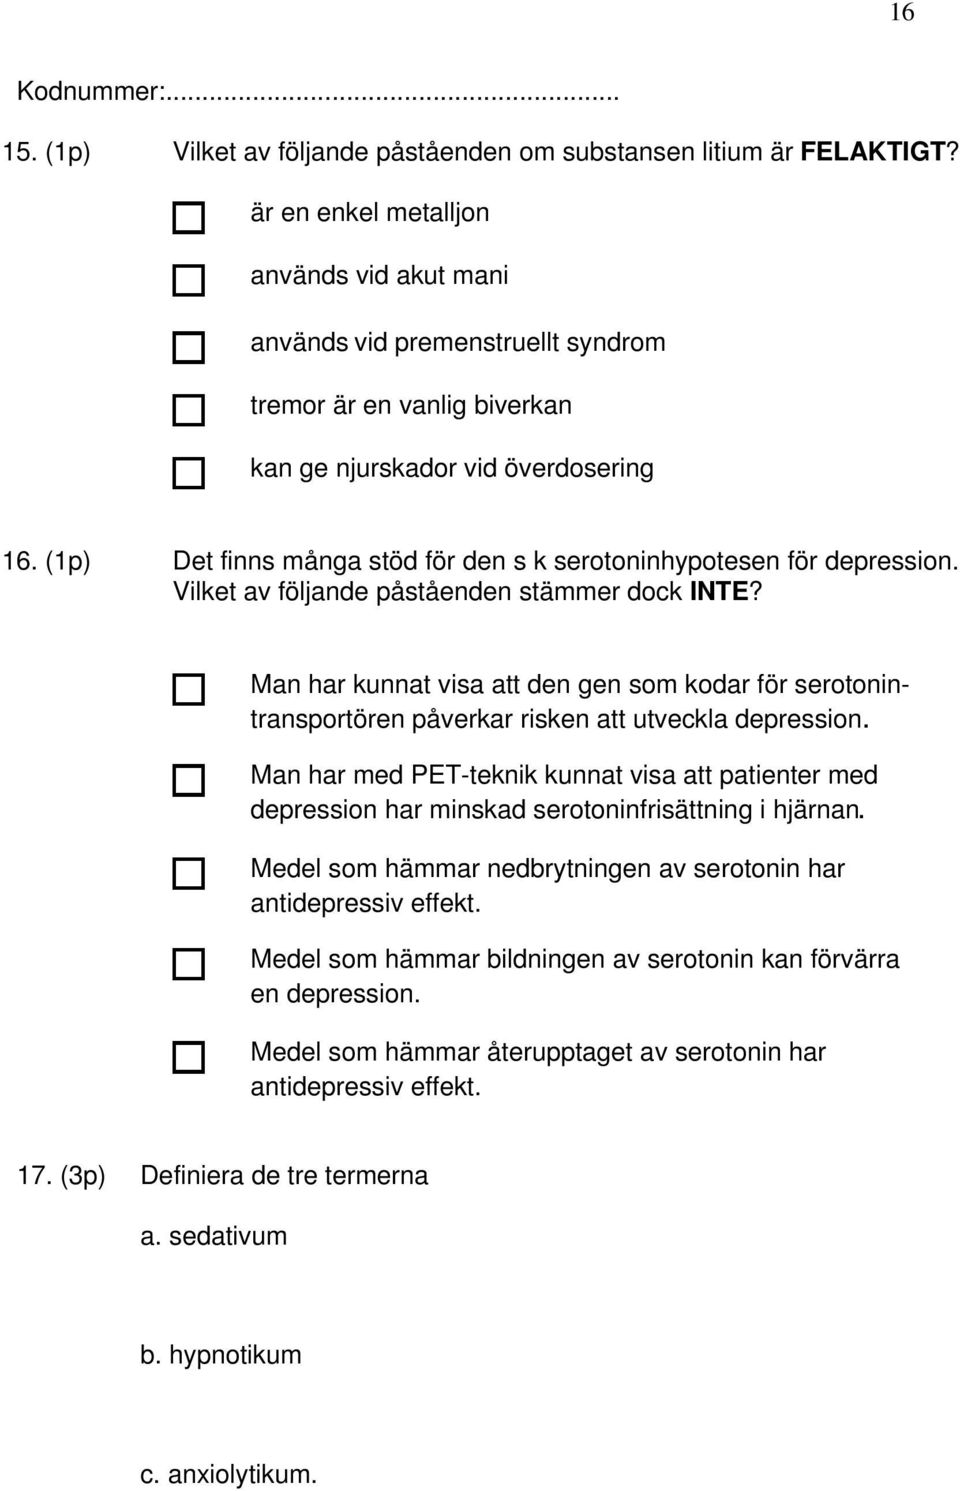 (1p) Det finns många stöd för den s k serotoninhypotesen för depression. Vilket av följande påståenden stämmer dock INTE?